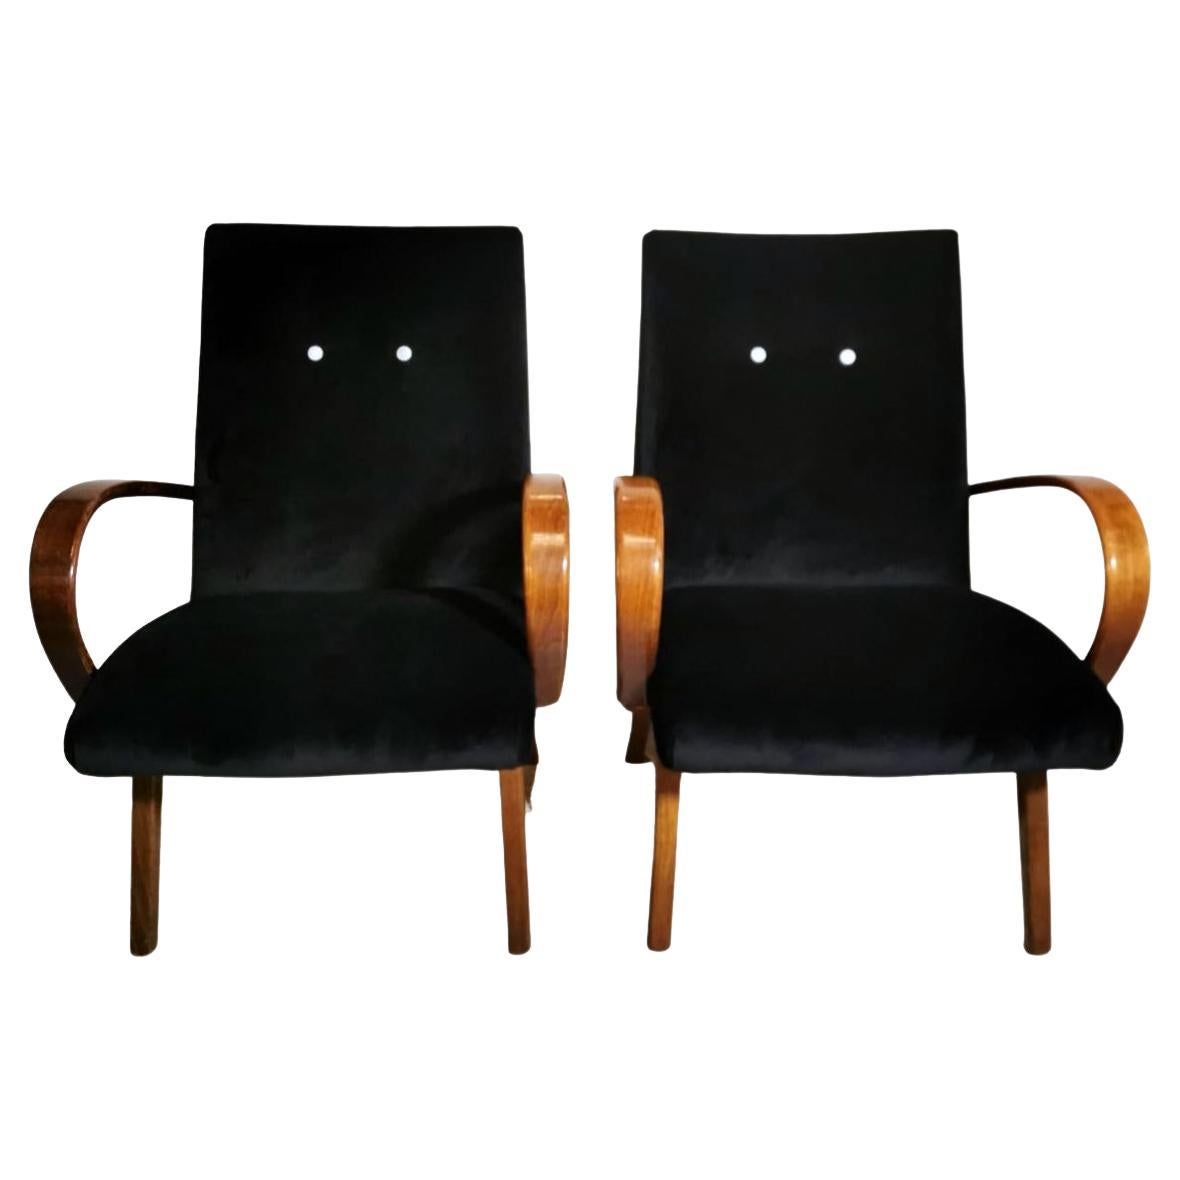 Paire de fauteuils Art déco tchécoslovaques attribués à Jindrich Halabala.